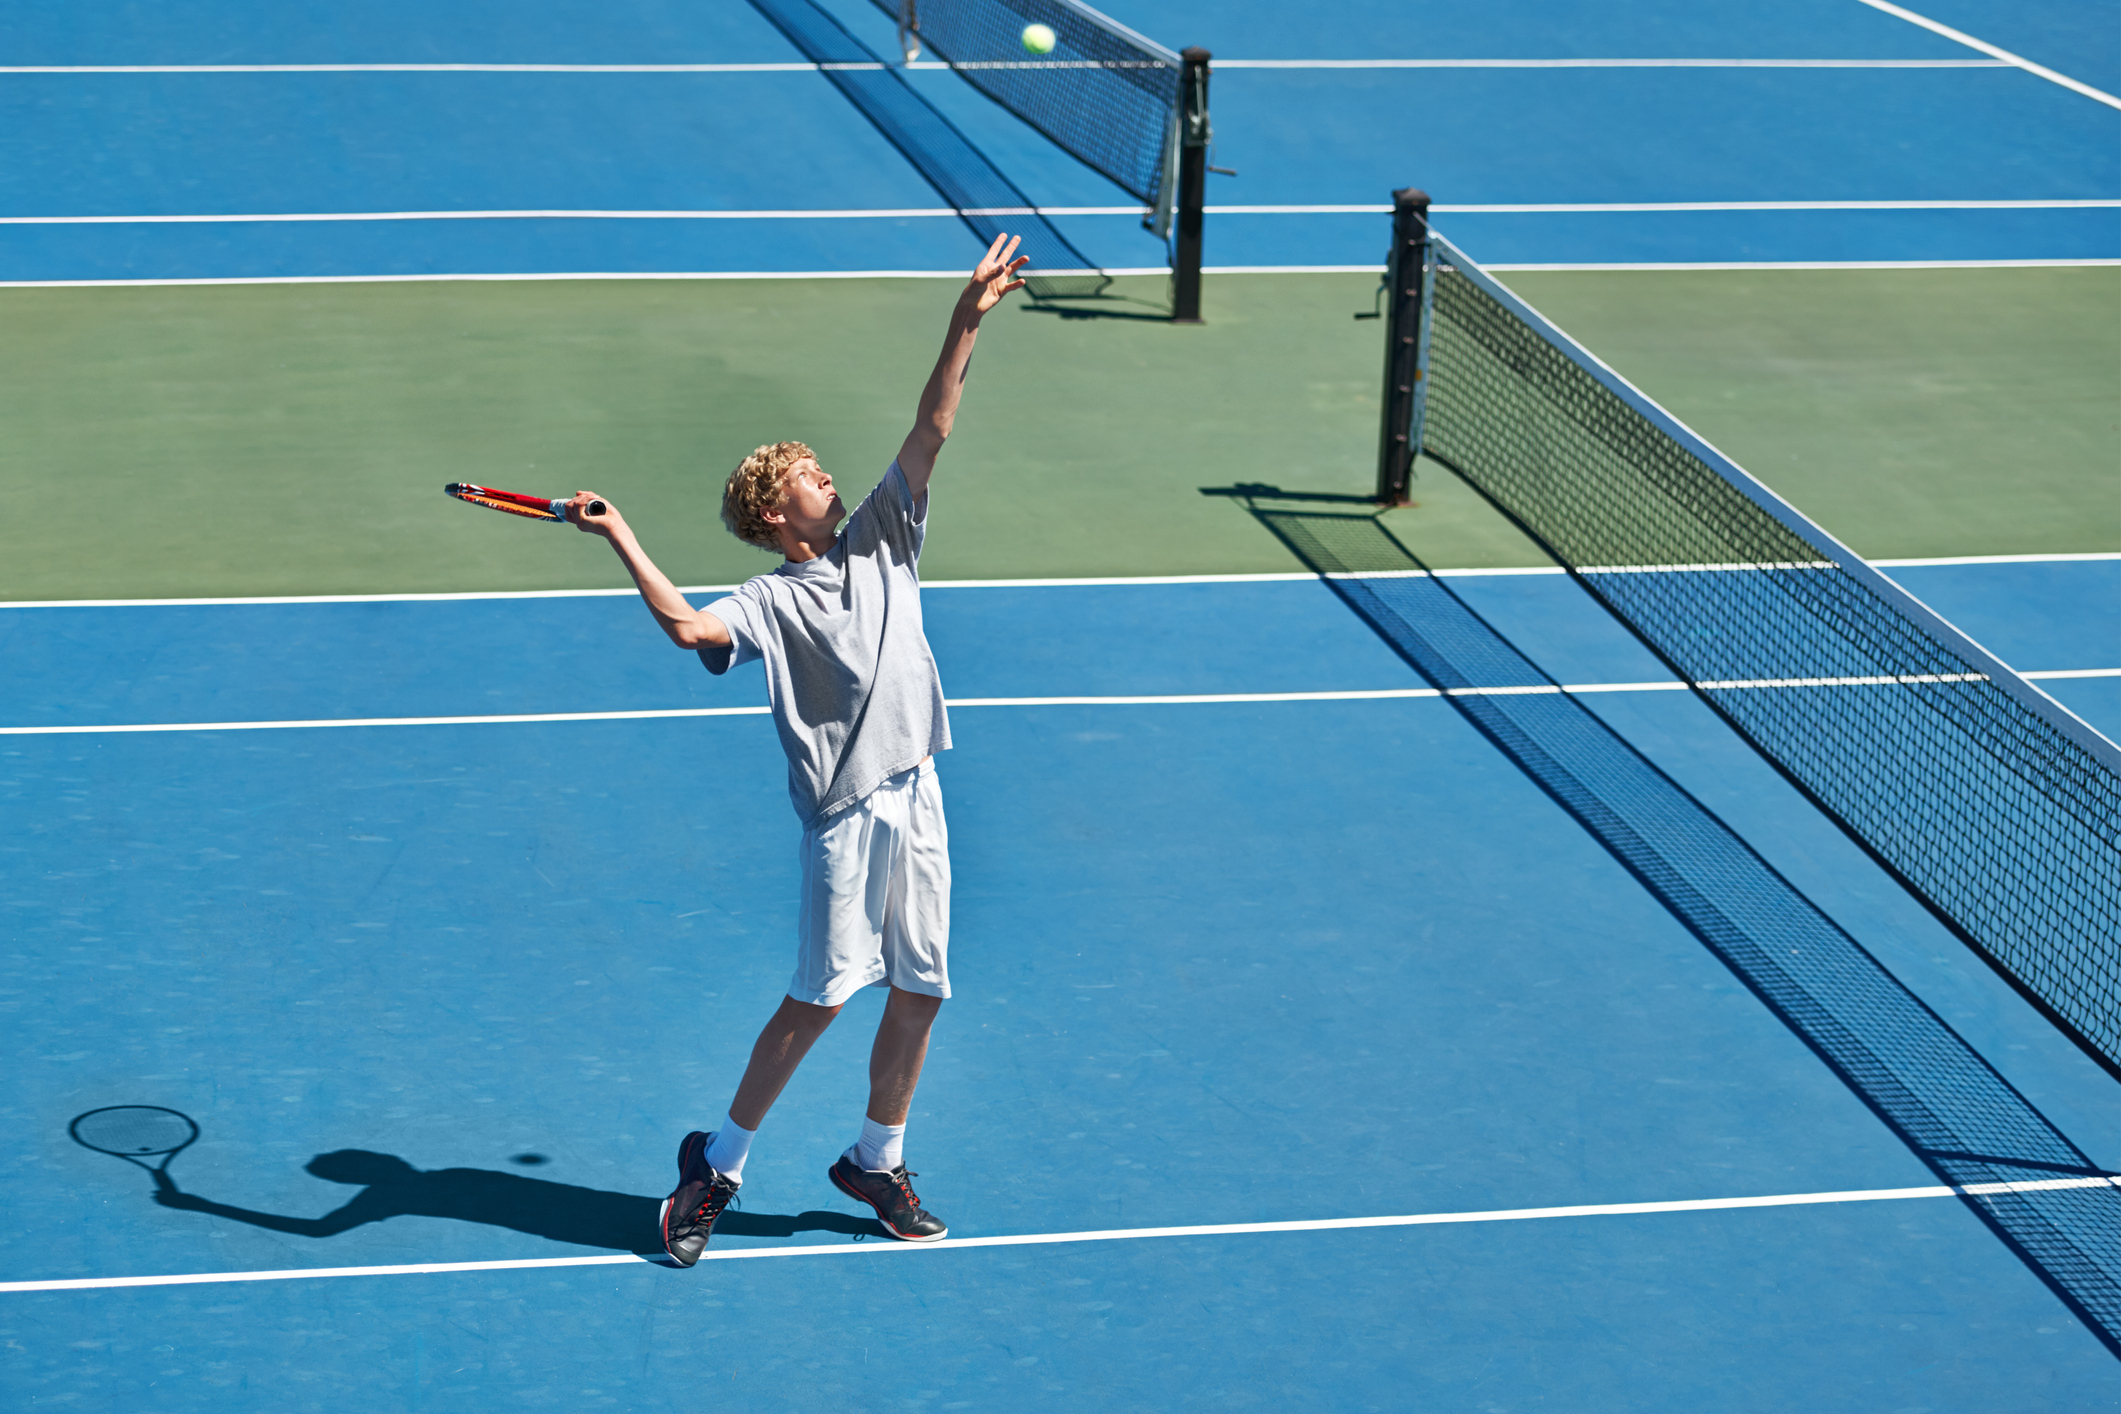 Теннис сетка игры. Игра в теннис со стенкой. Теннис в Солнечный день. Самый длинный гейм в теннисе. Виртуальный спорт теннис.